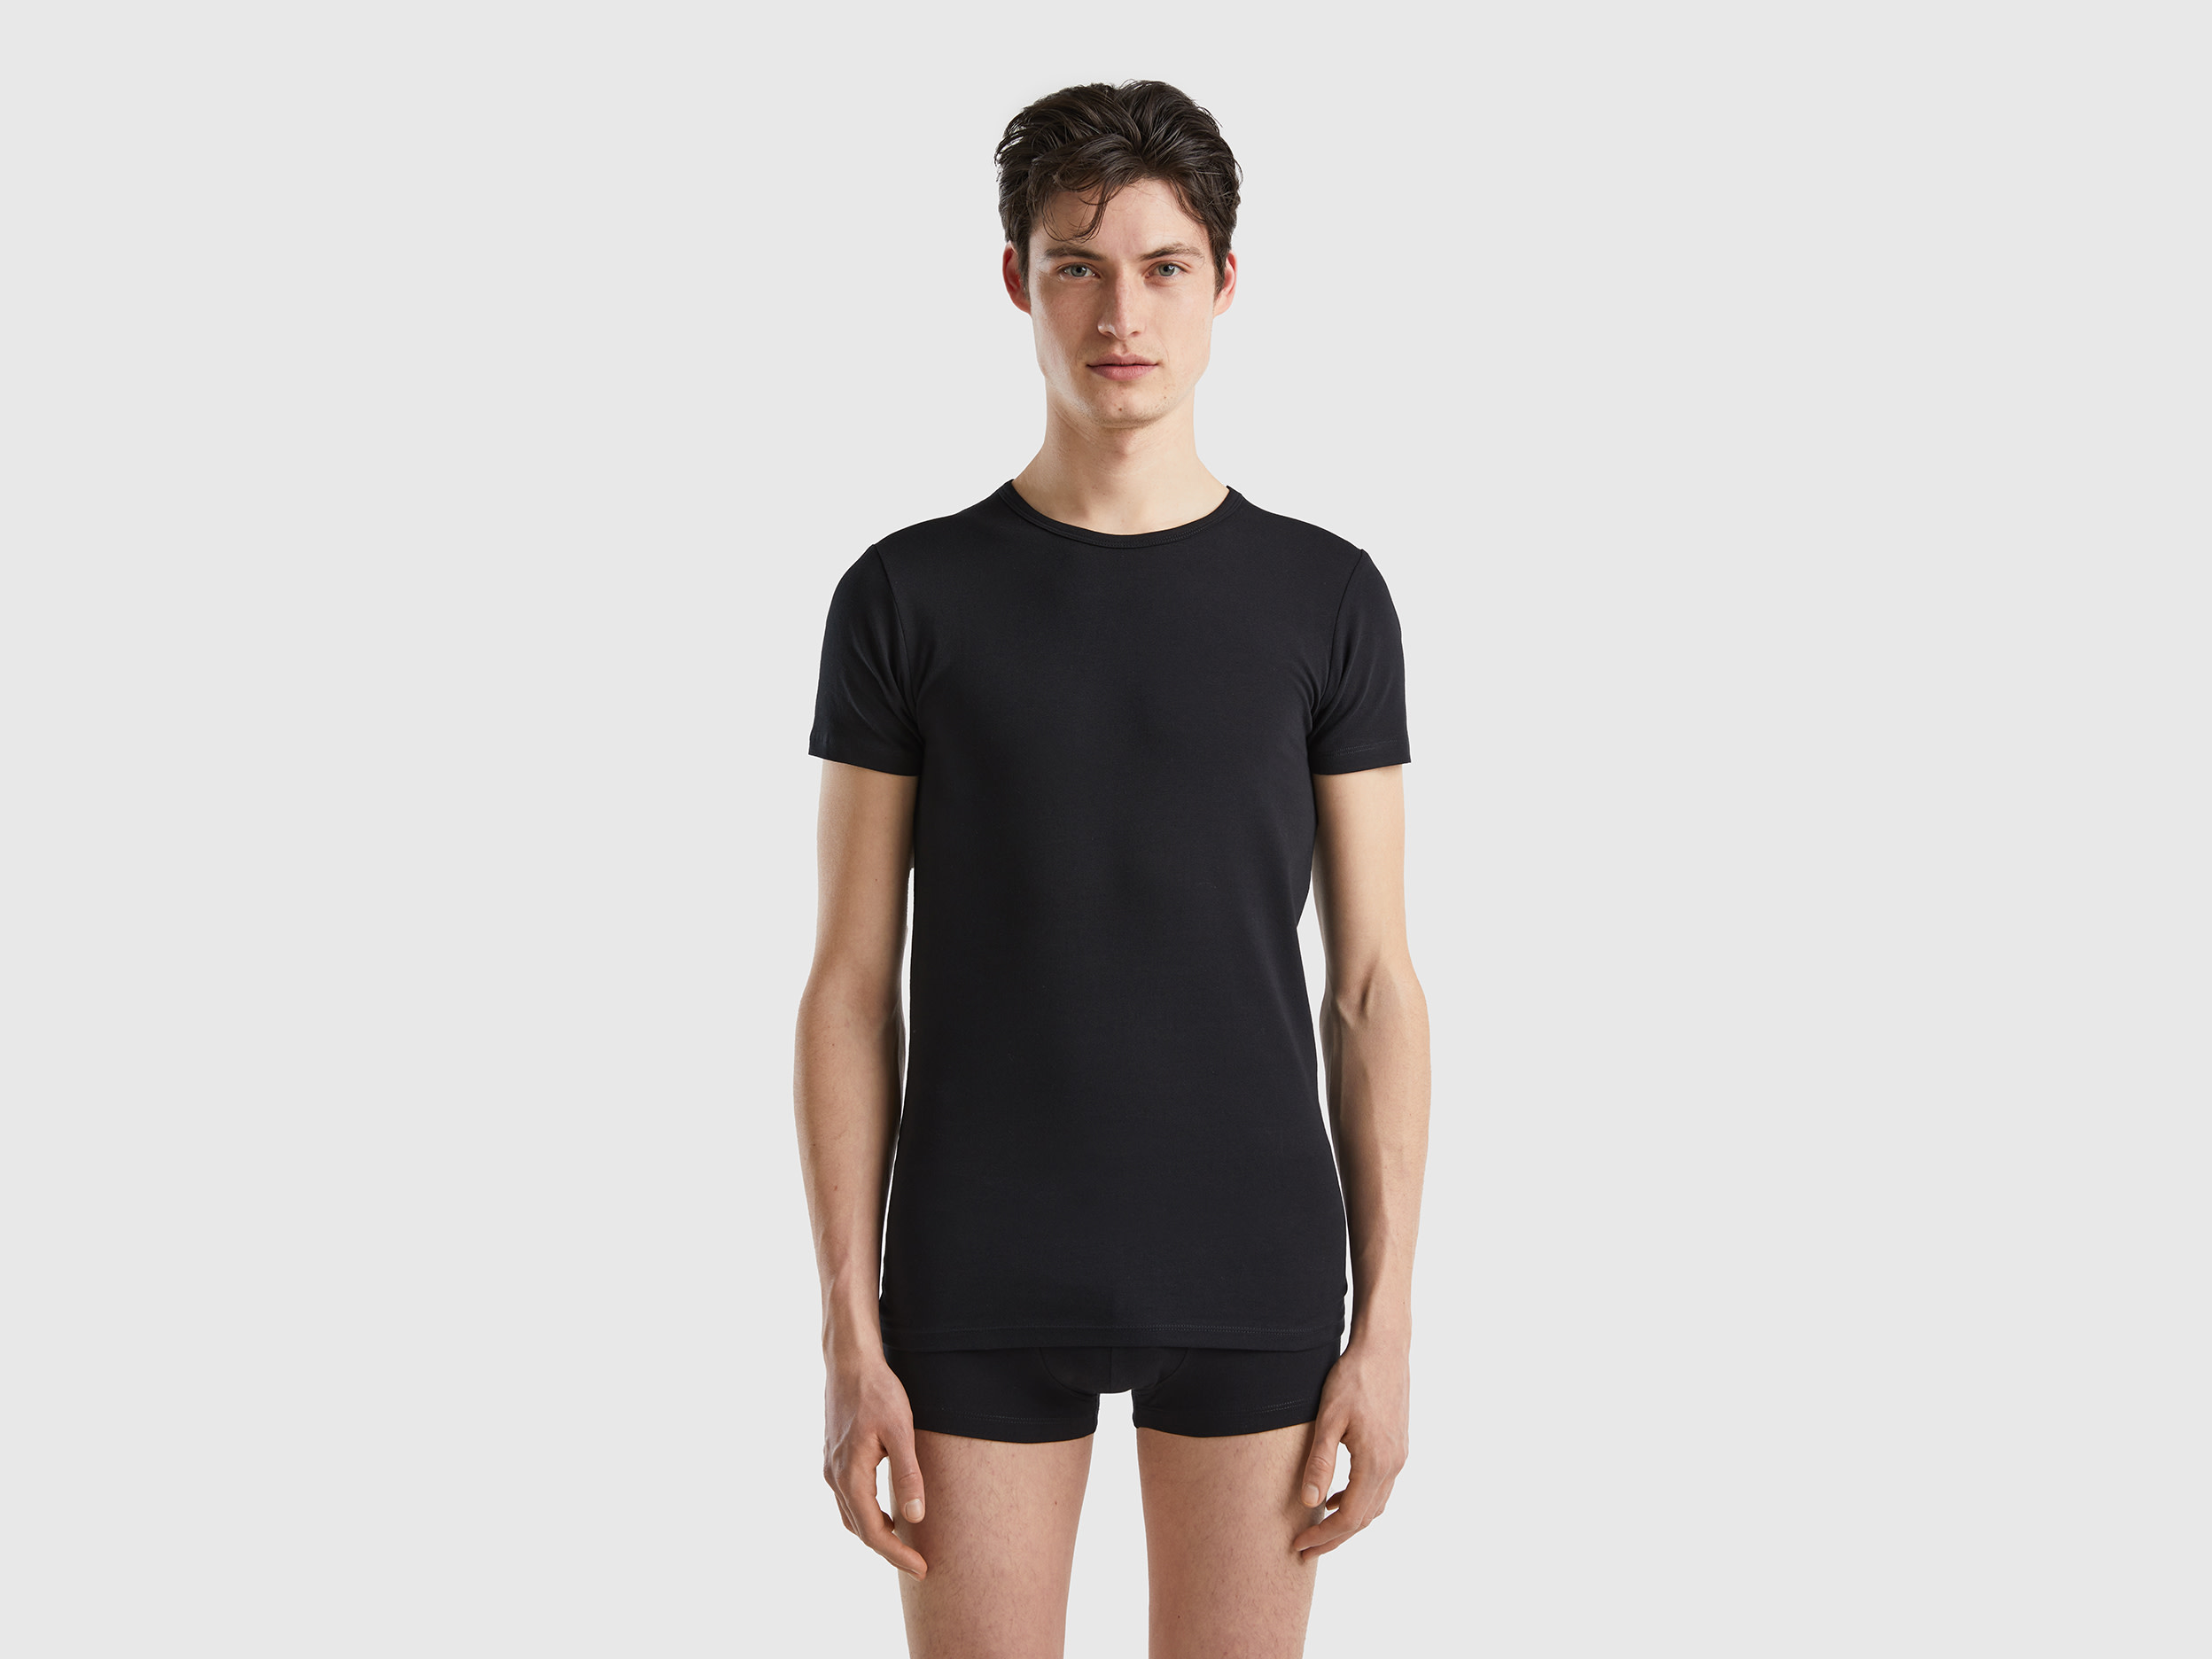 Benetton, Organic Stretch Cotton T-shirt, size XL, Black, Men